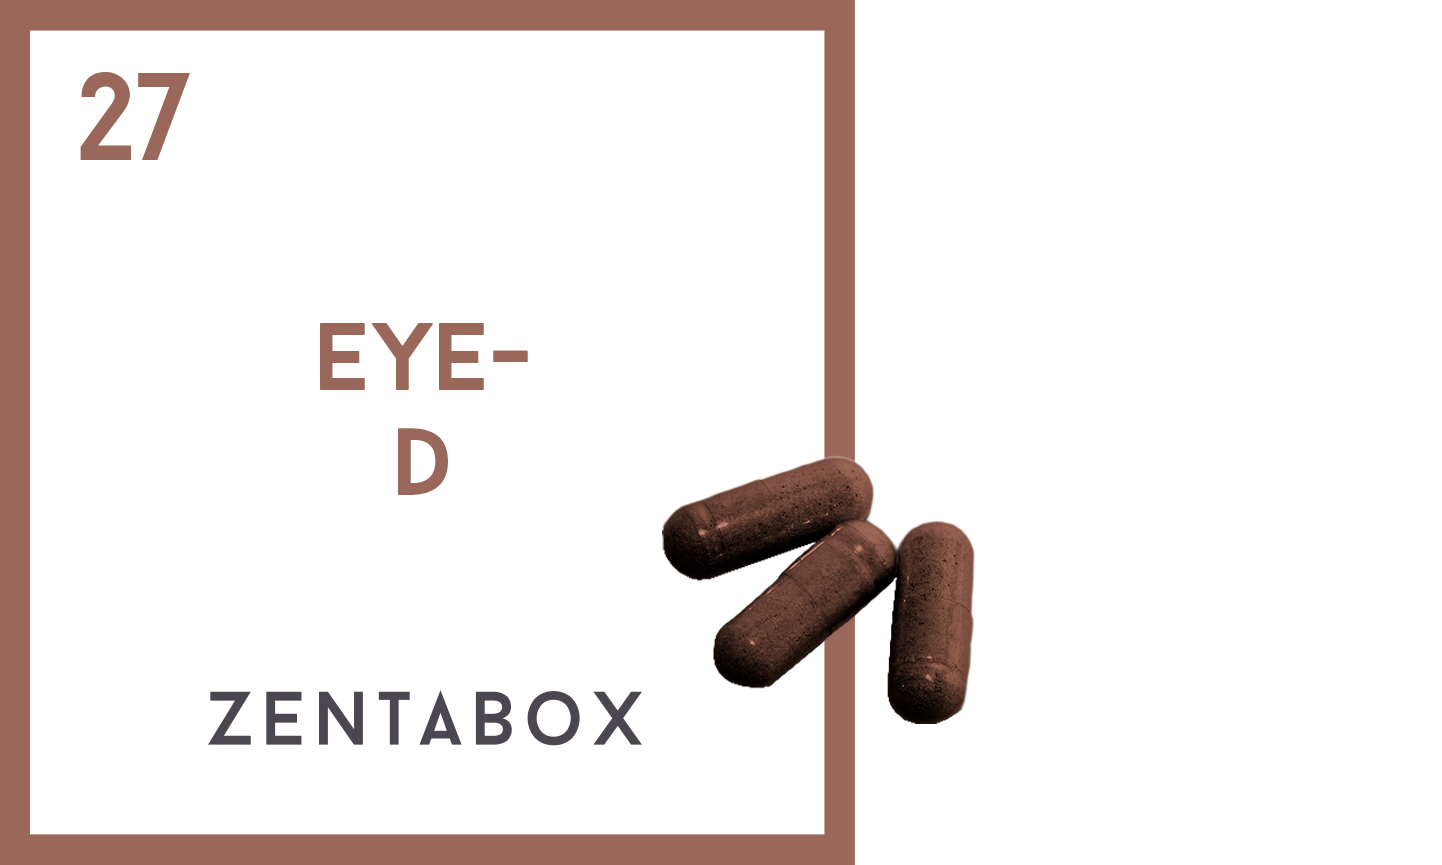 Eye-D